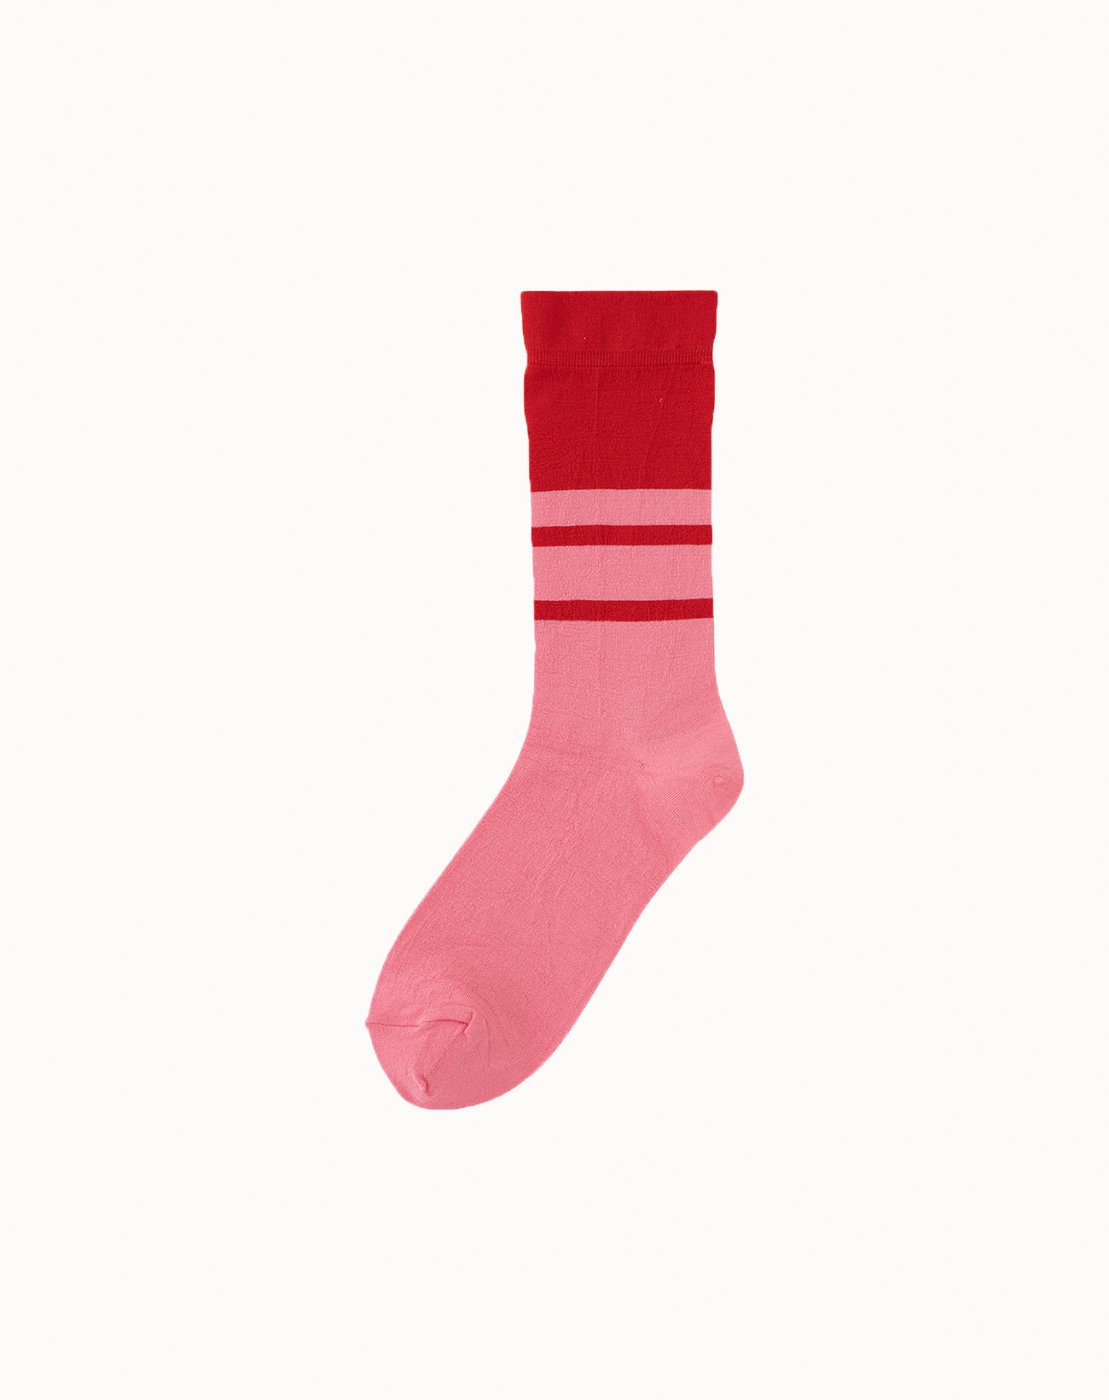 leur logette - Bicolor Socks - Light Pink